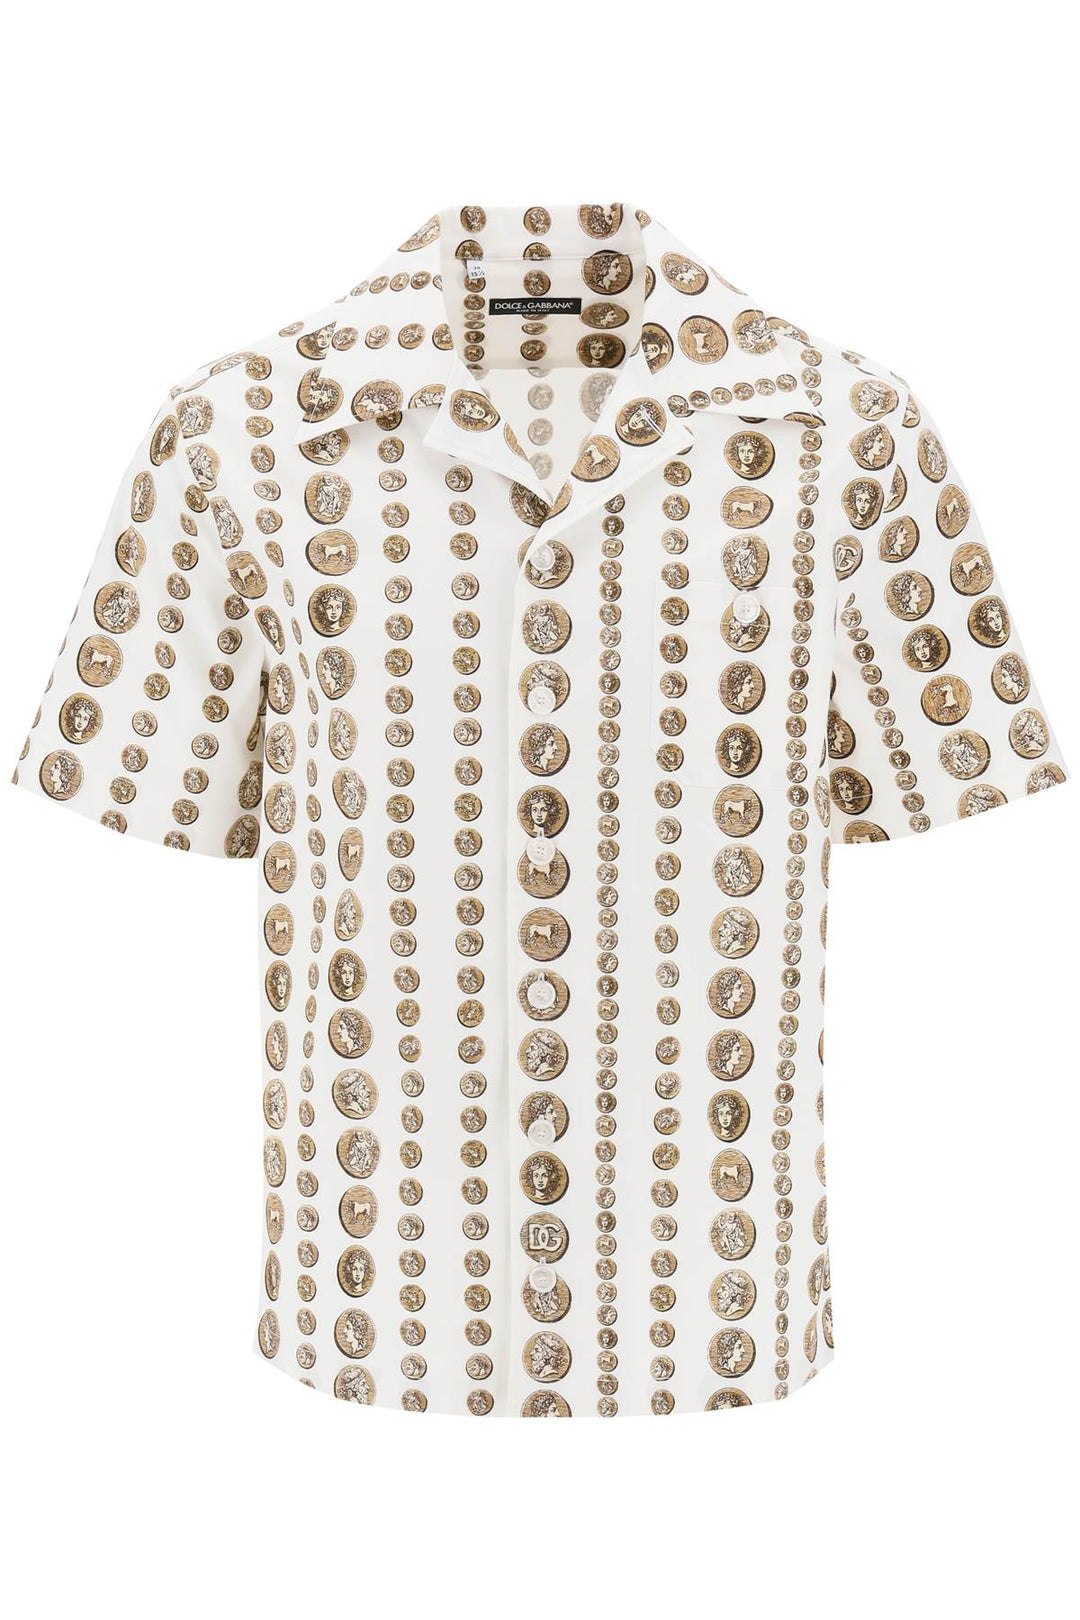 Dolce & Gabbana Coin Print Short Sleeve Shirt   Bianco